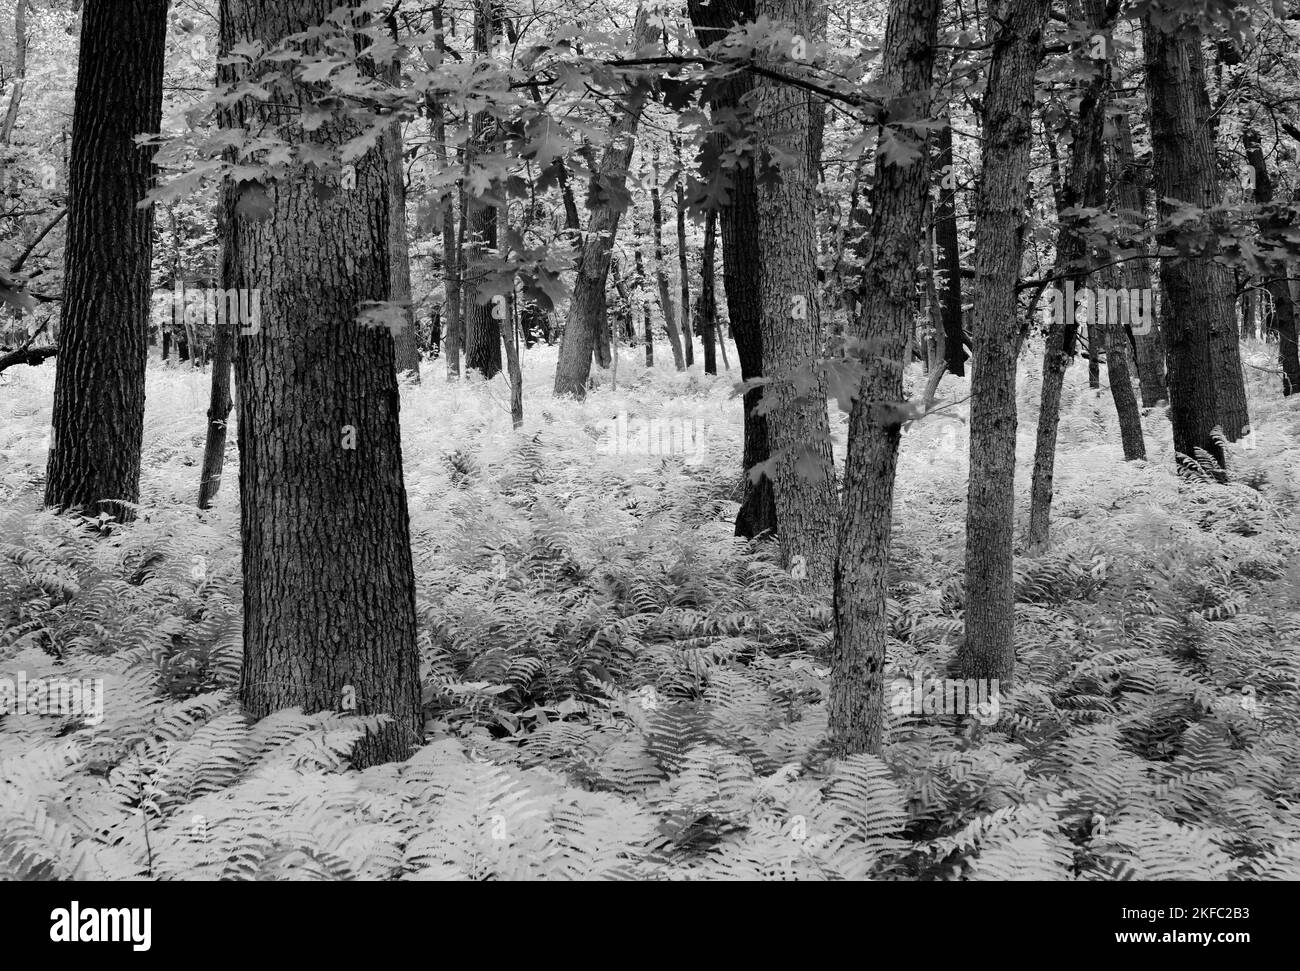 Le fond de la forêt est rempli de fougères dans une région qui est très au sud de la zone normale de fougères, Zander's Woods Forest Preserve, Cook County, Illinois Banque D'Images